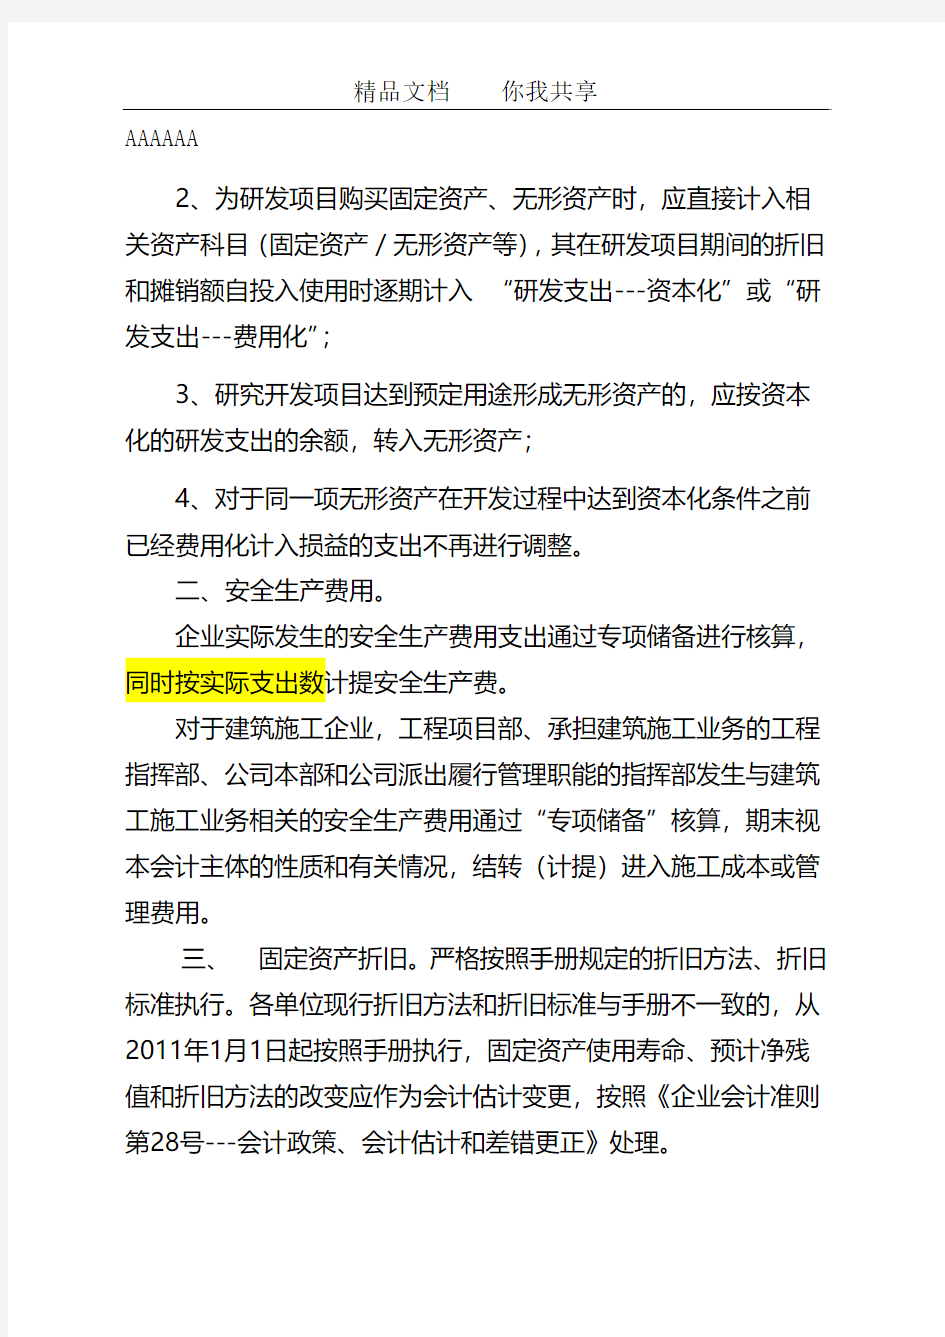 关于执行《中国中铁会计核算手册》的通知草稿0330